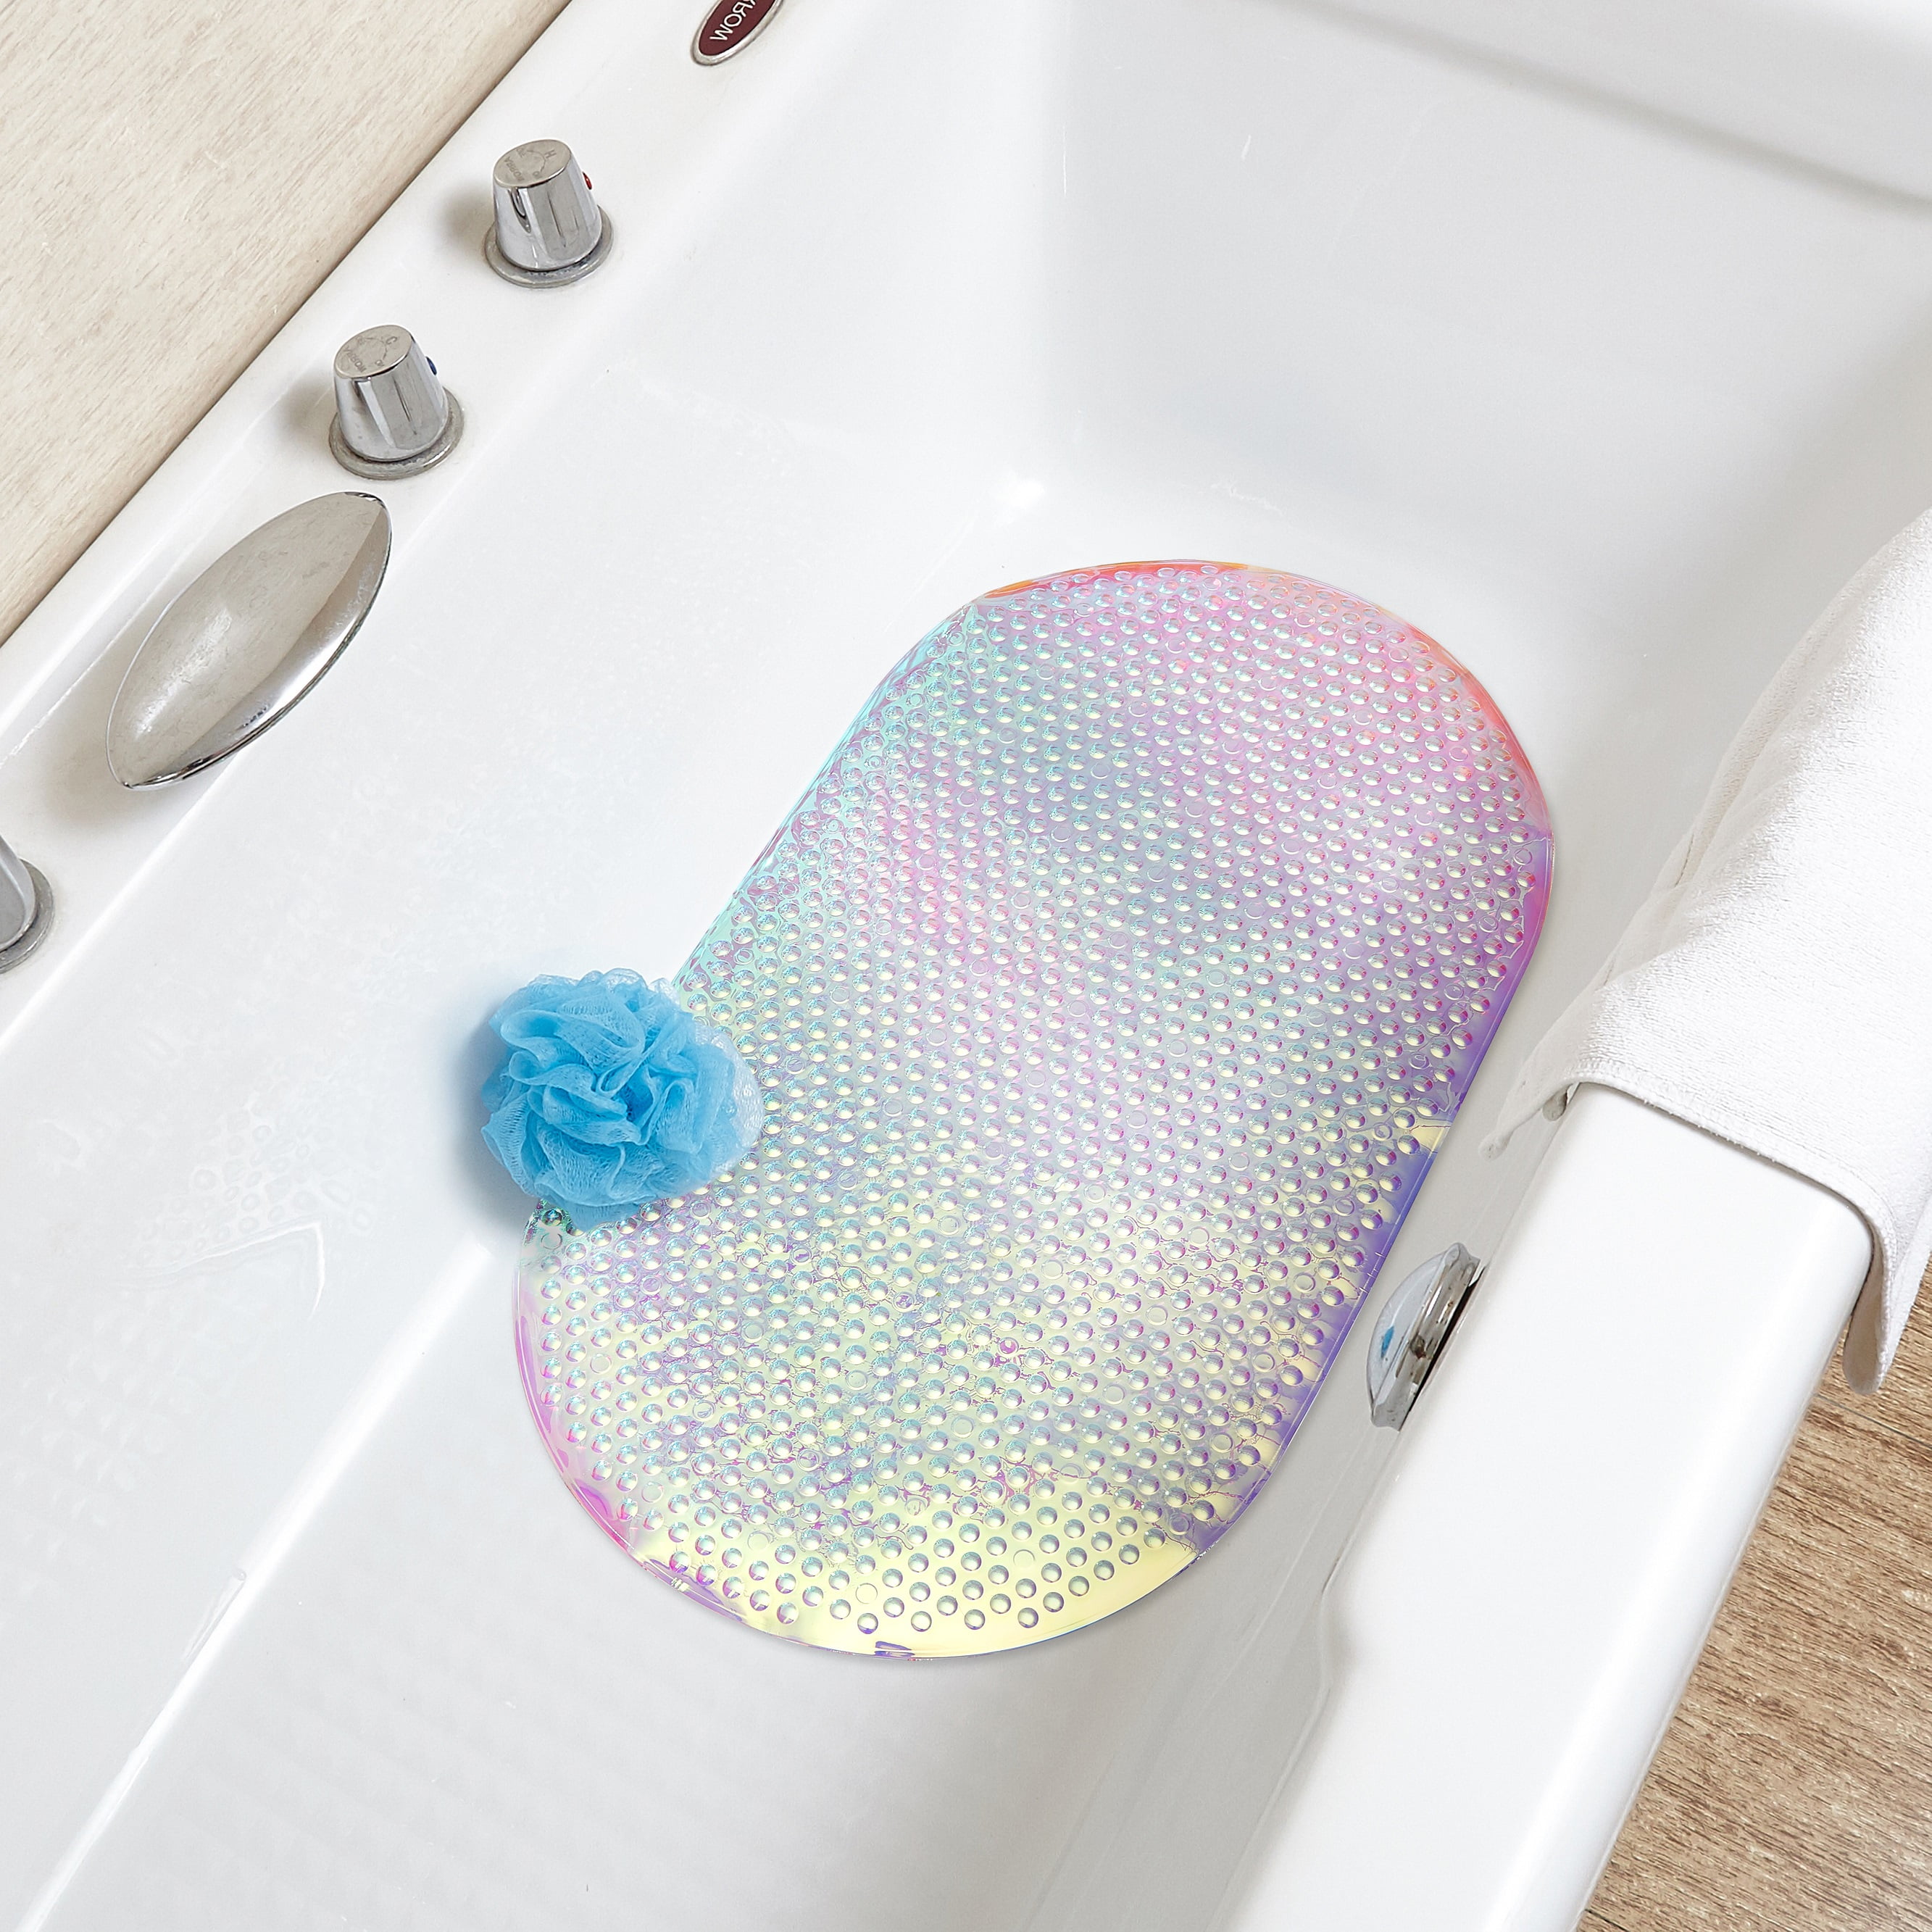 Oval Shaped Anti-slip Foot Massage Bath Mat PVC Material 15" x 27" New 